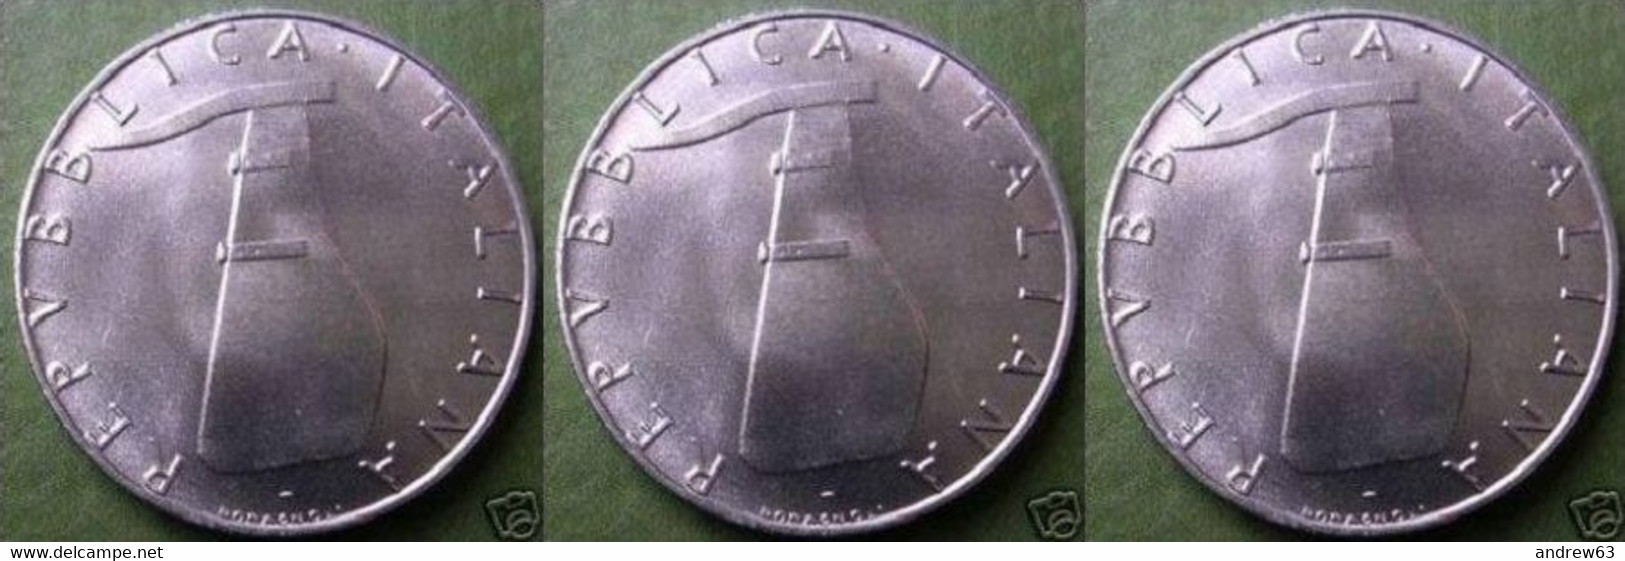 ITALIA - Lire 5 1990 - FDC/Unc Da Rotolino/from Roll 3 Monete/3 Coins - 5 Lire